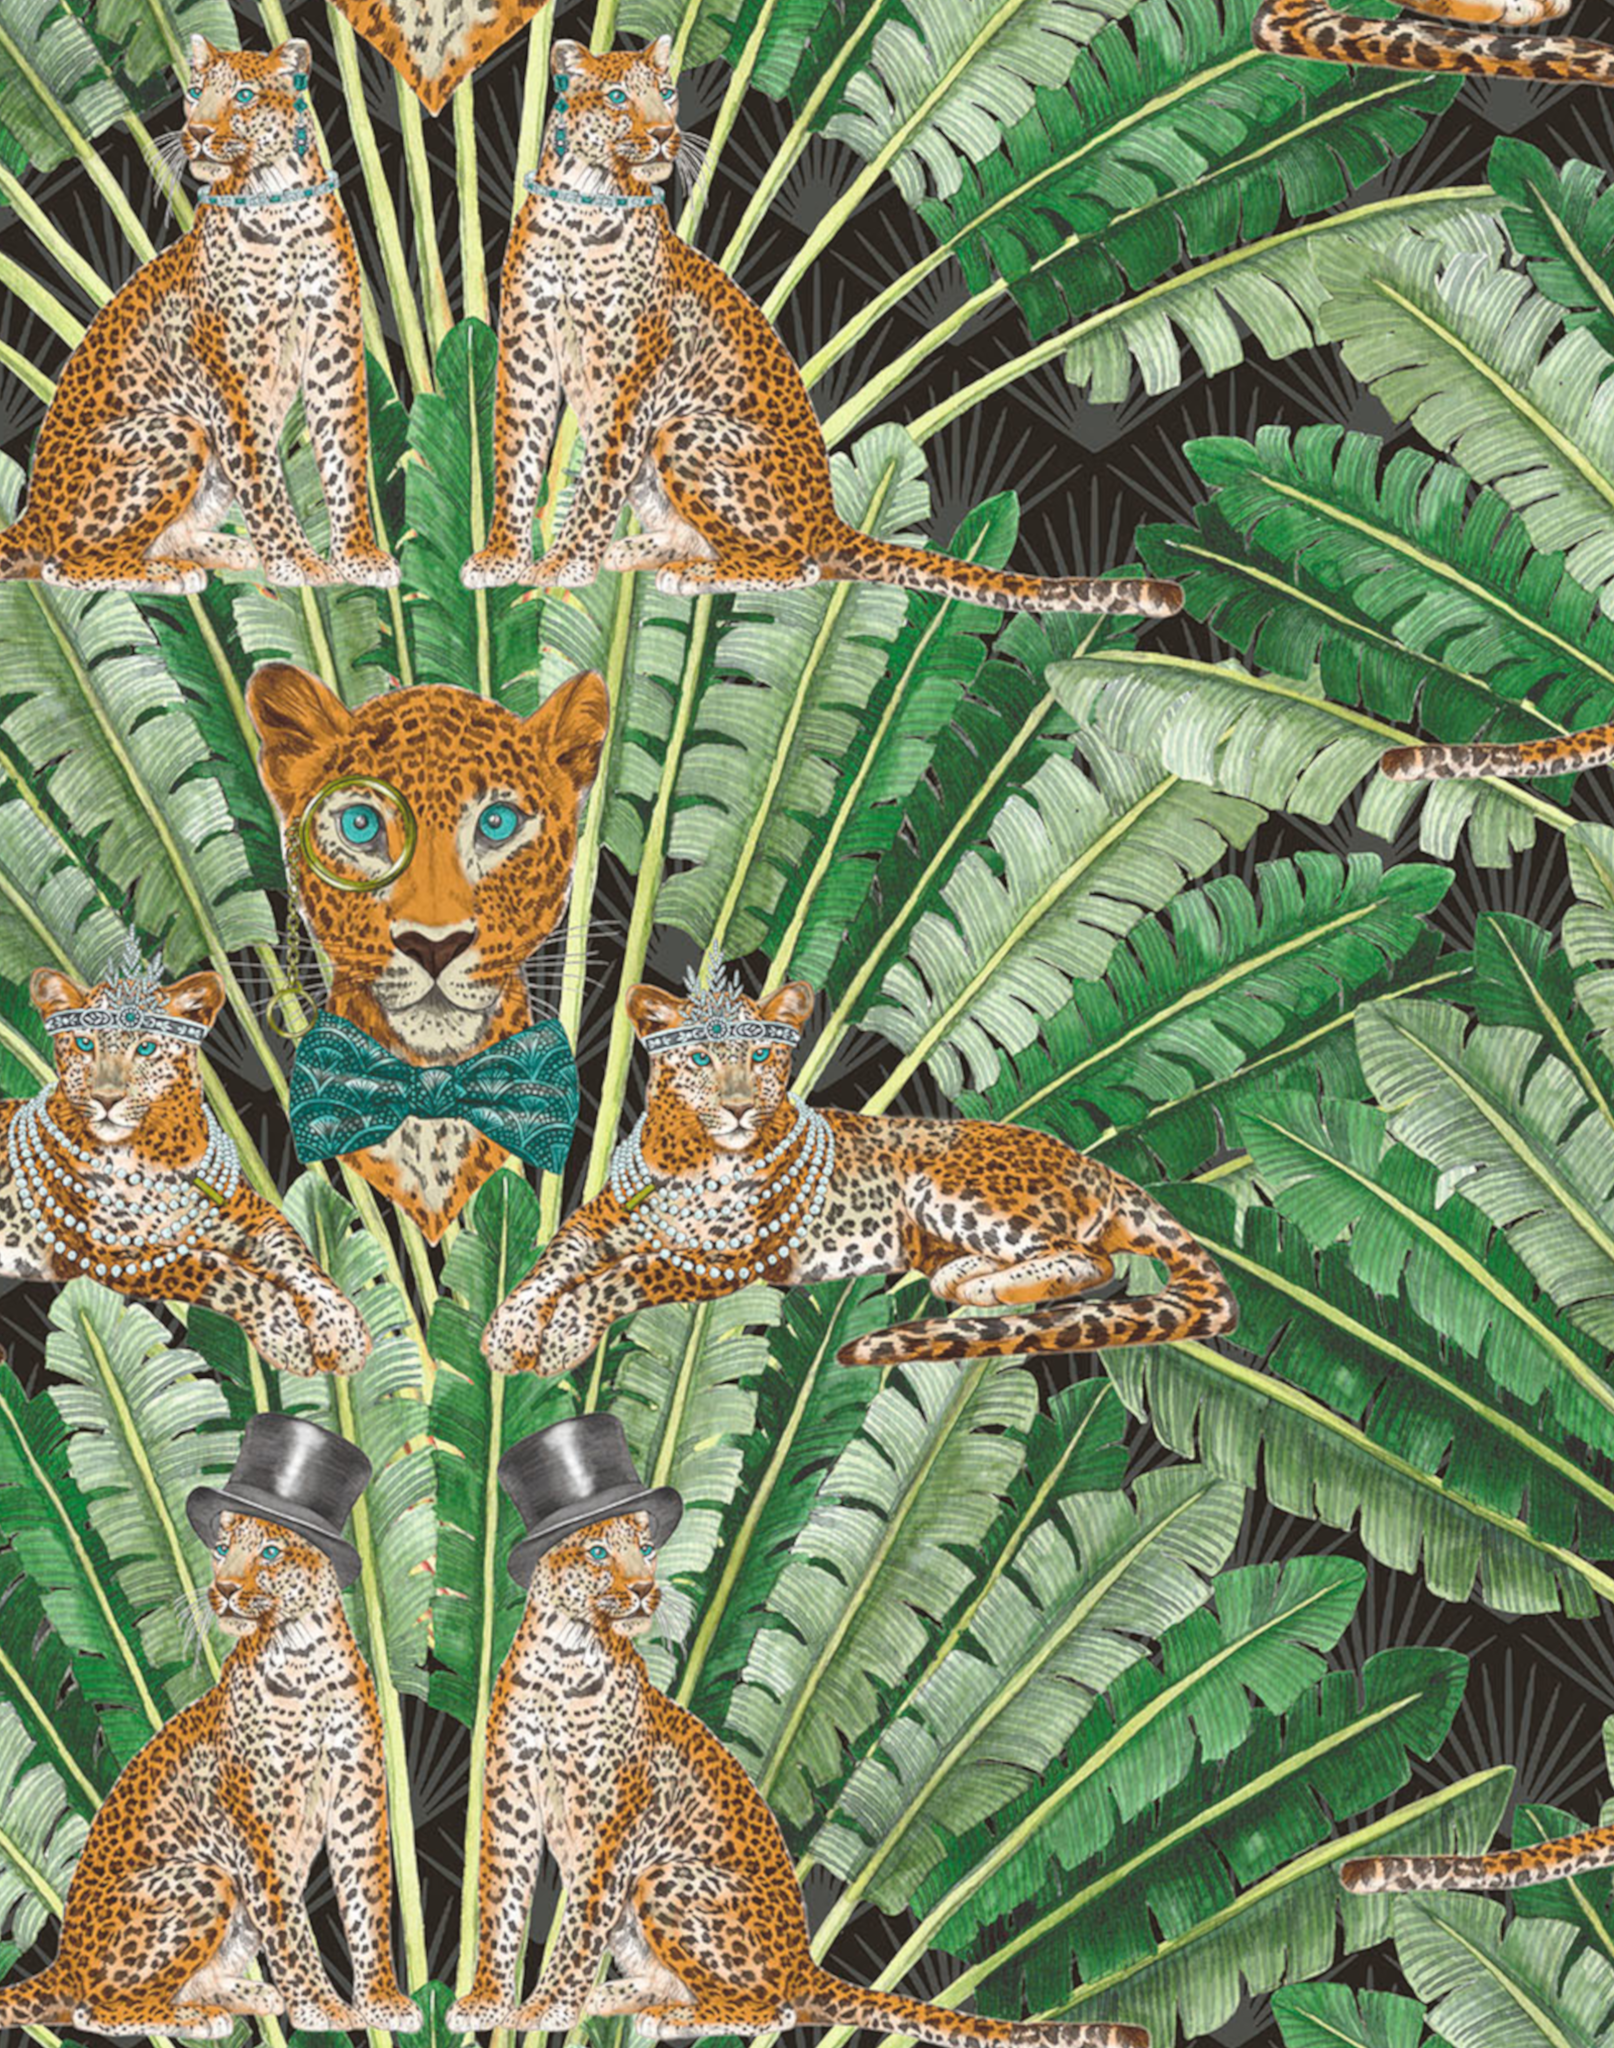 Brand McKenzie - Leopard Wallpaper